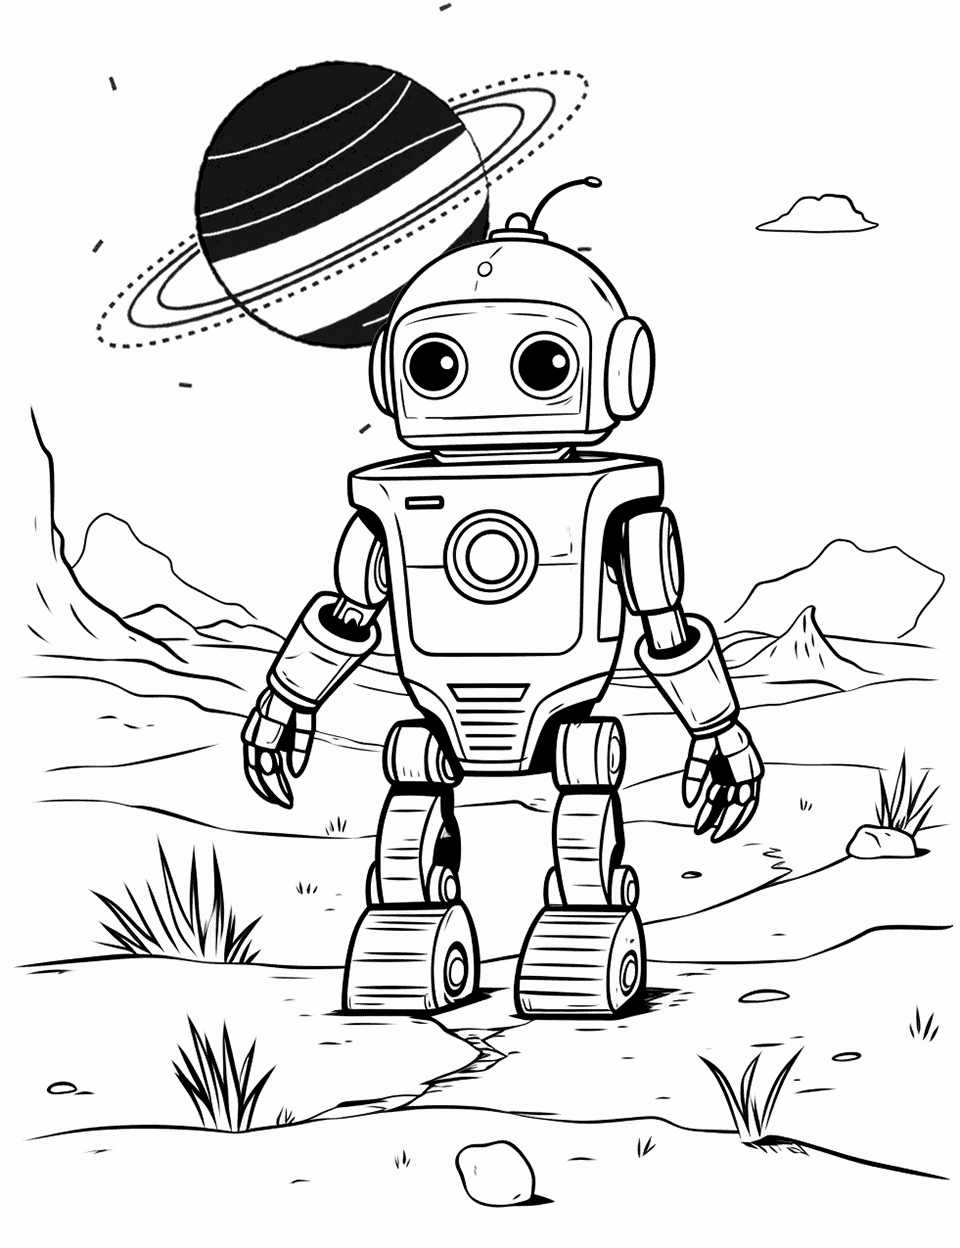 Sci-Fi Robot Explorer Coloring Page - A futuristic robot scanning a barren alien landscape.